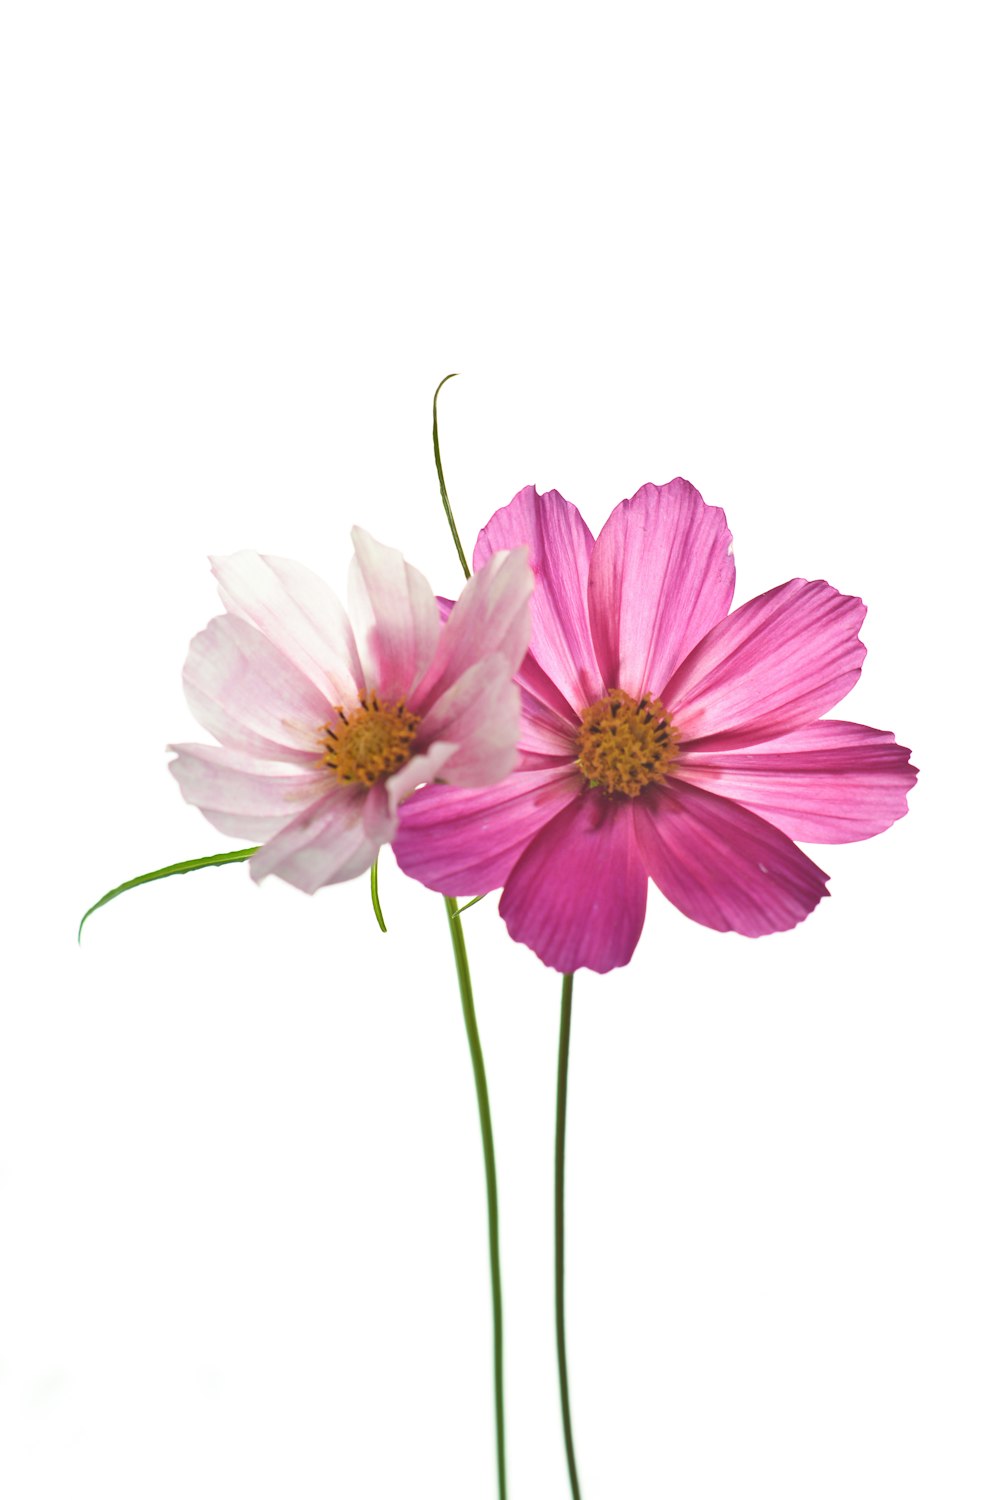 fiore rosa con gambo verde